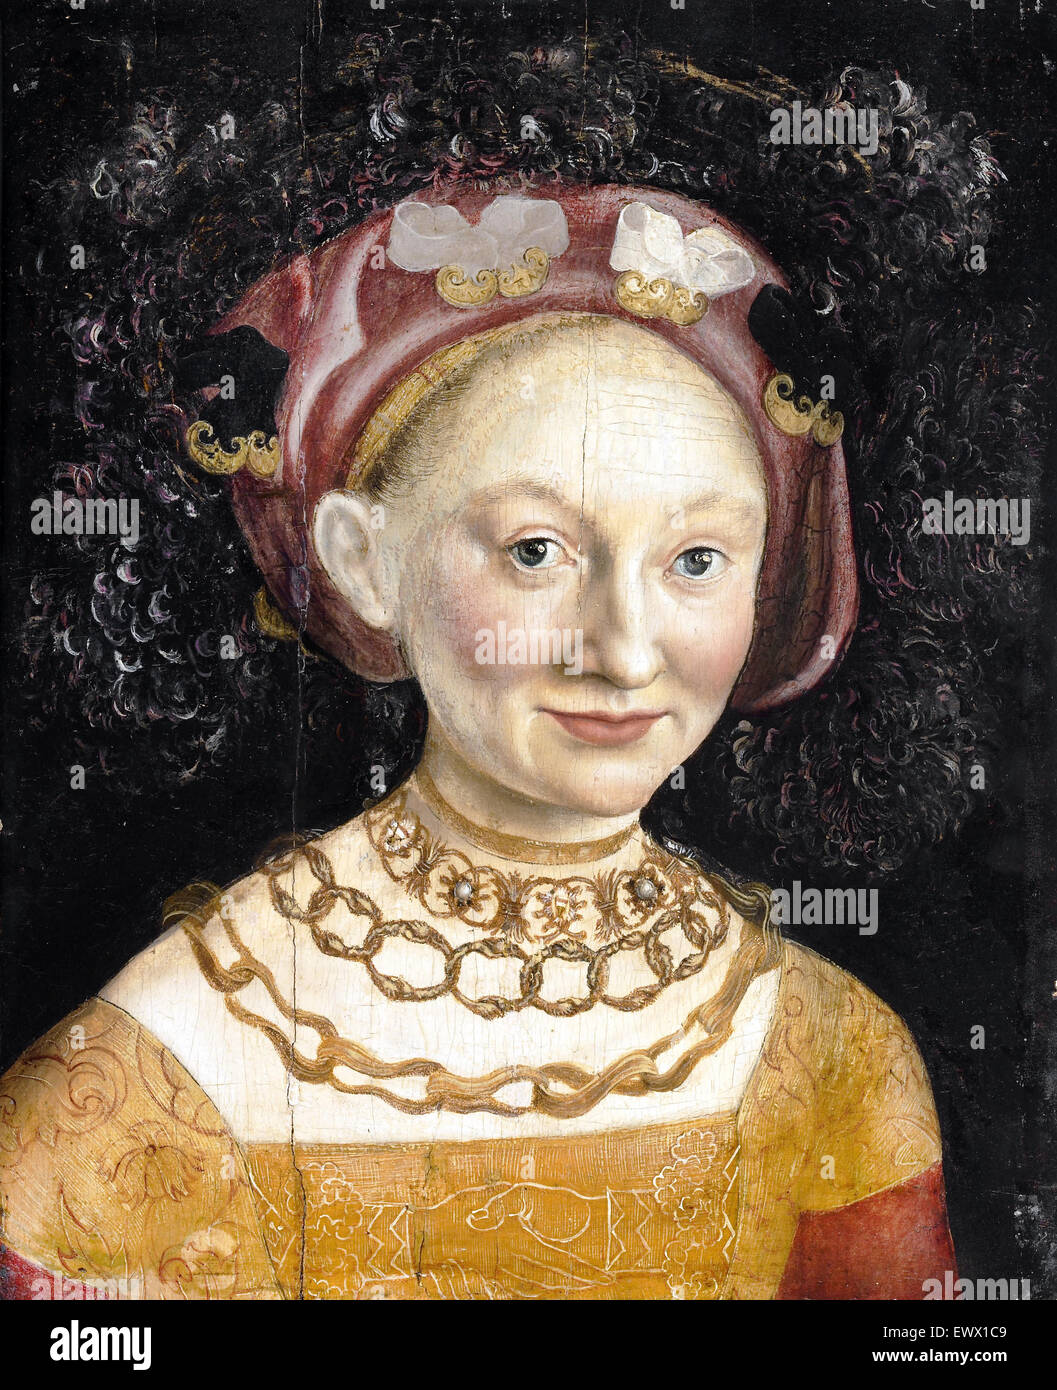 Hans Krell, Emilia Prinzessin von Sachsen. Ca. 1530. Öl auf Holz. Walker Art Gallery, Liverpool, England. Stockfoto